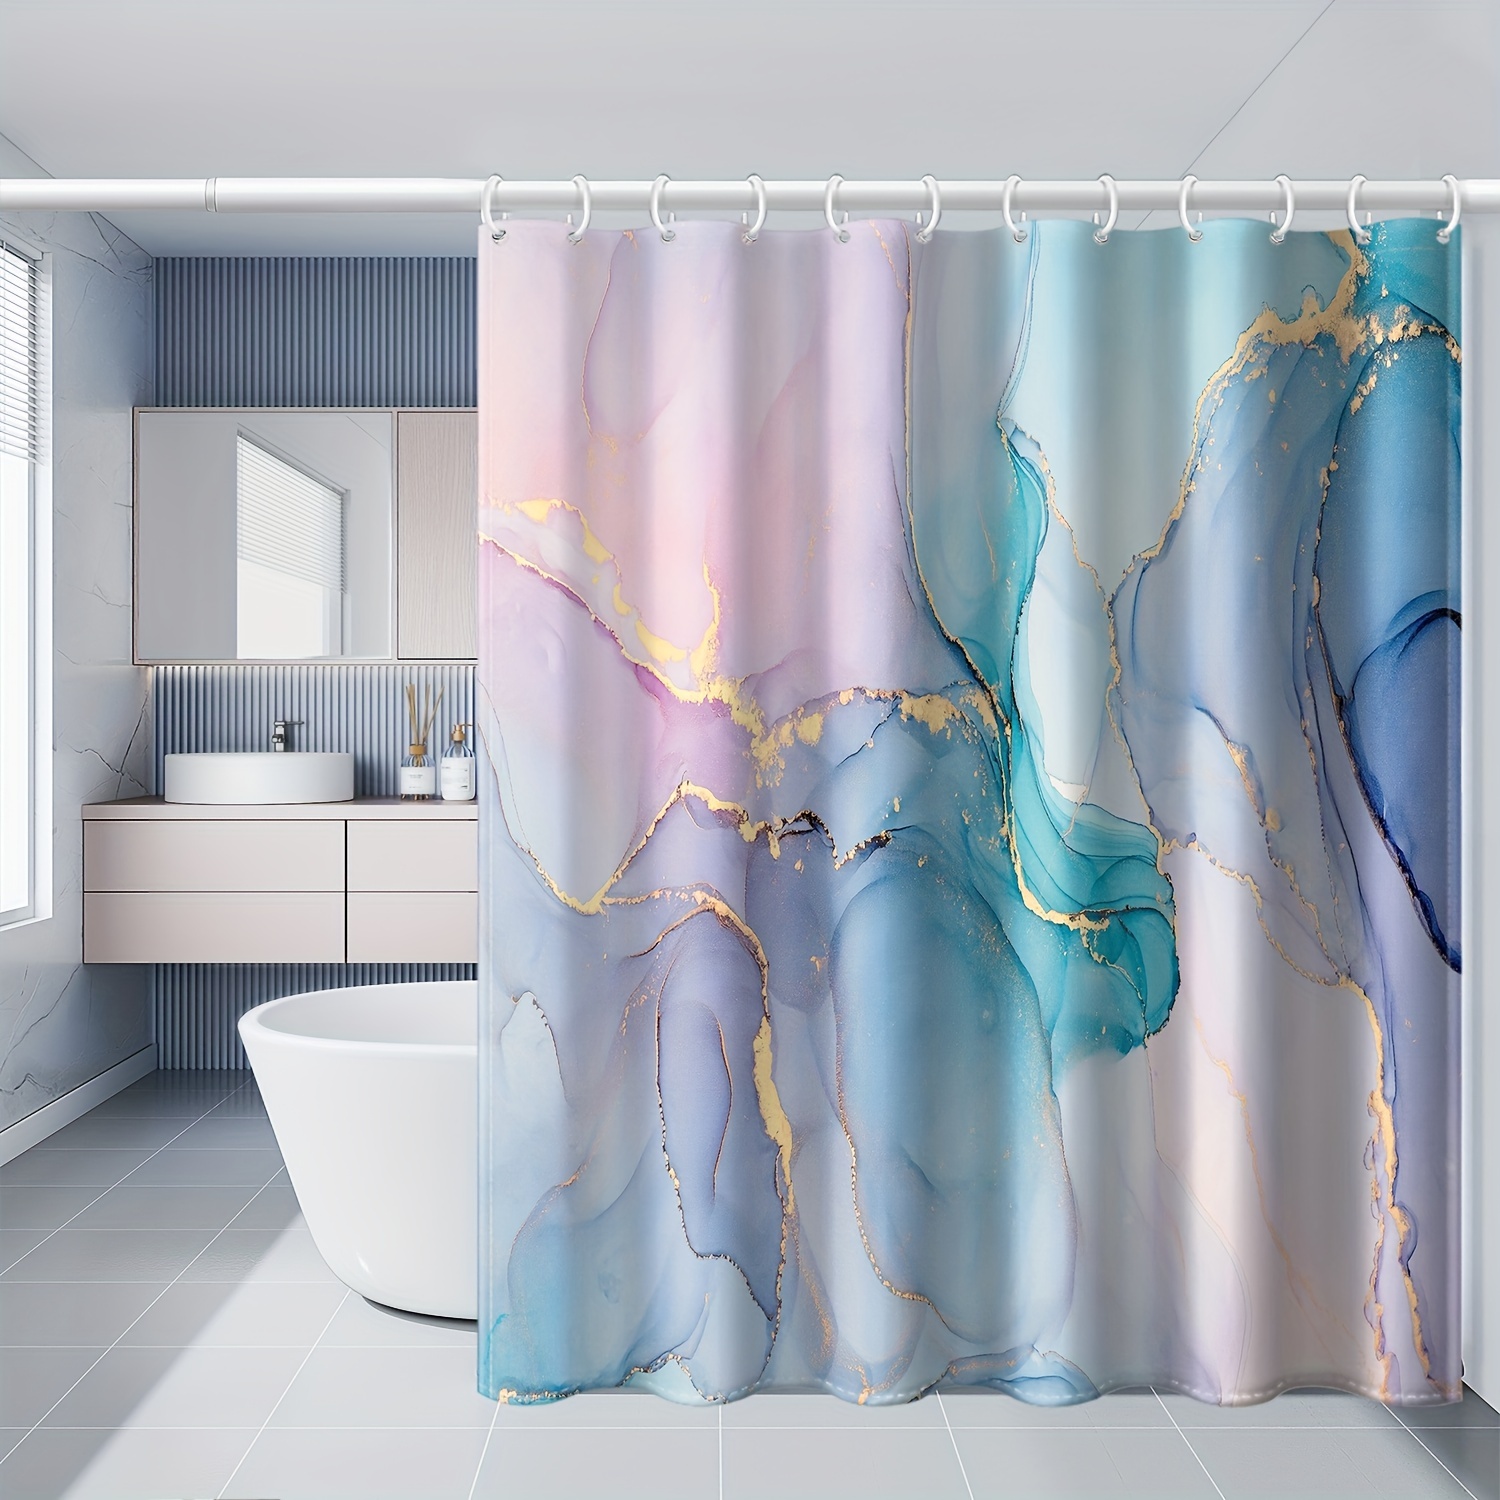  WUASDCS Divertida cortina de ducha de unicornio con